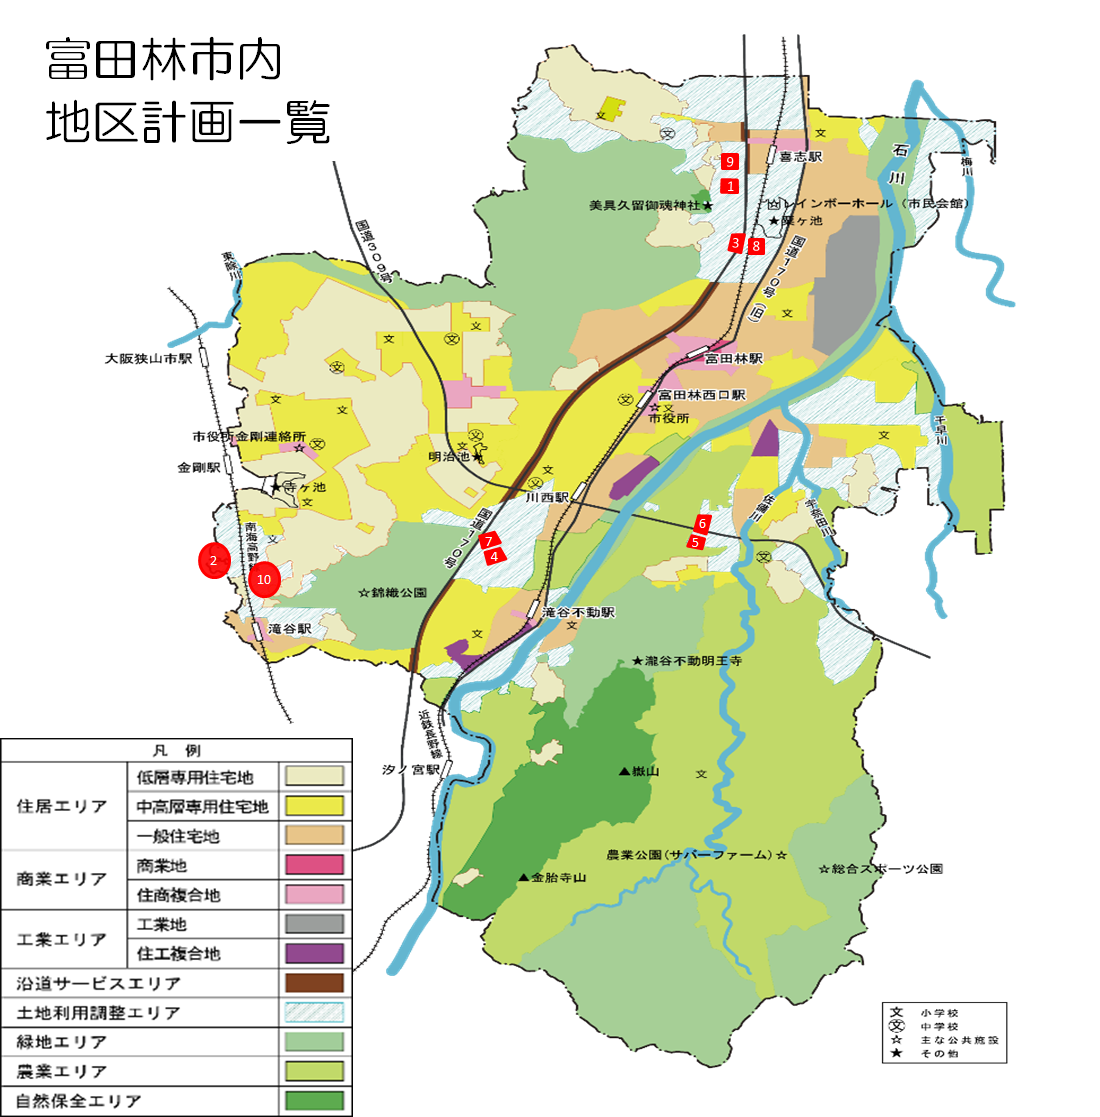 富田林市内地区計画一覧図